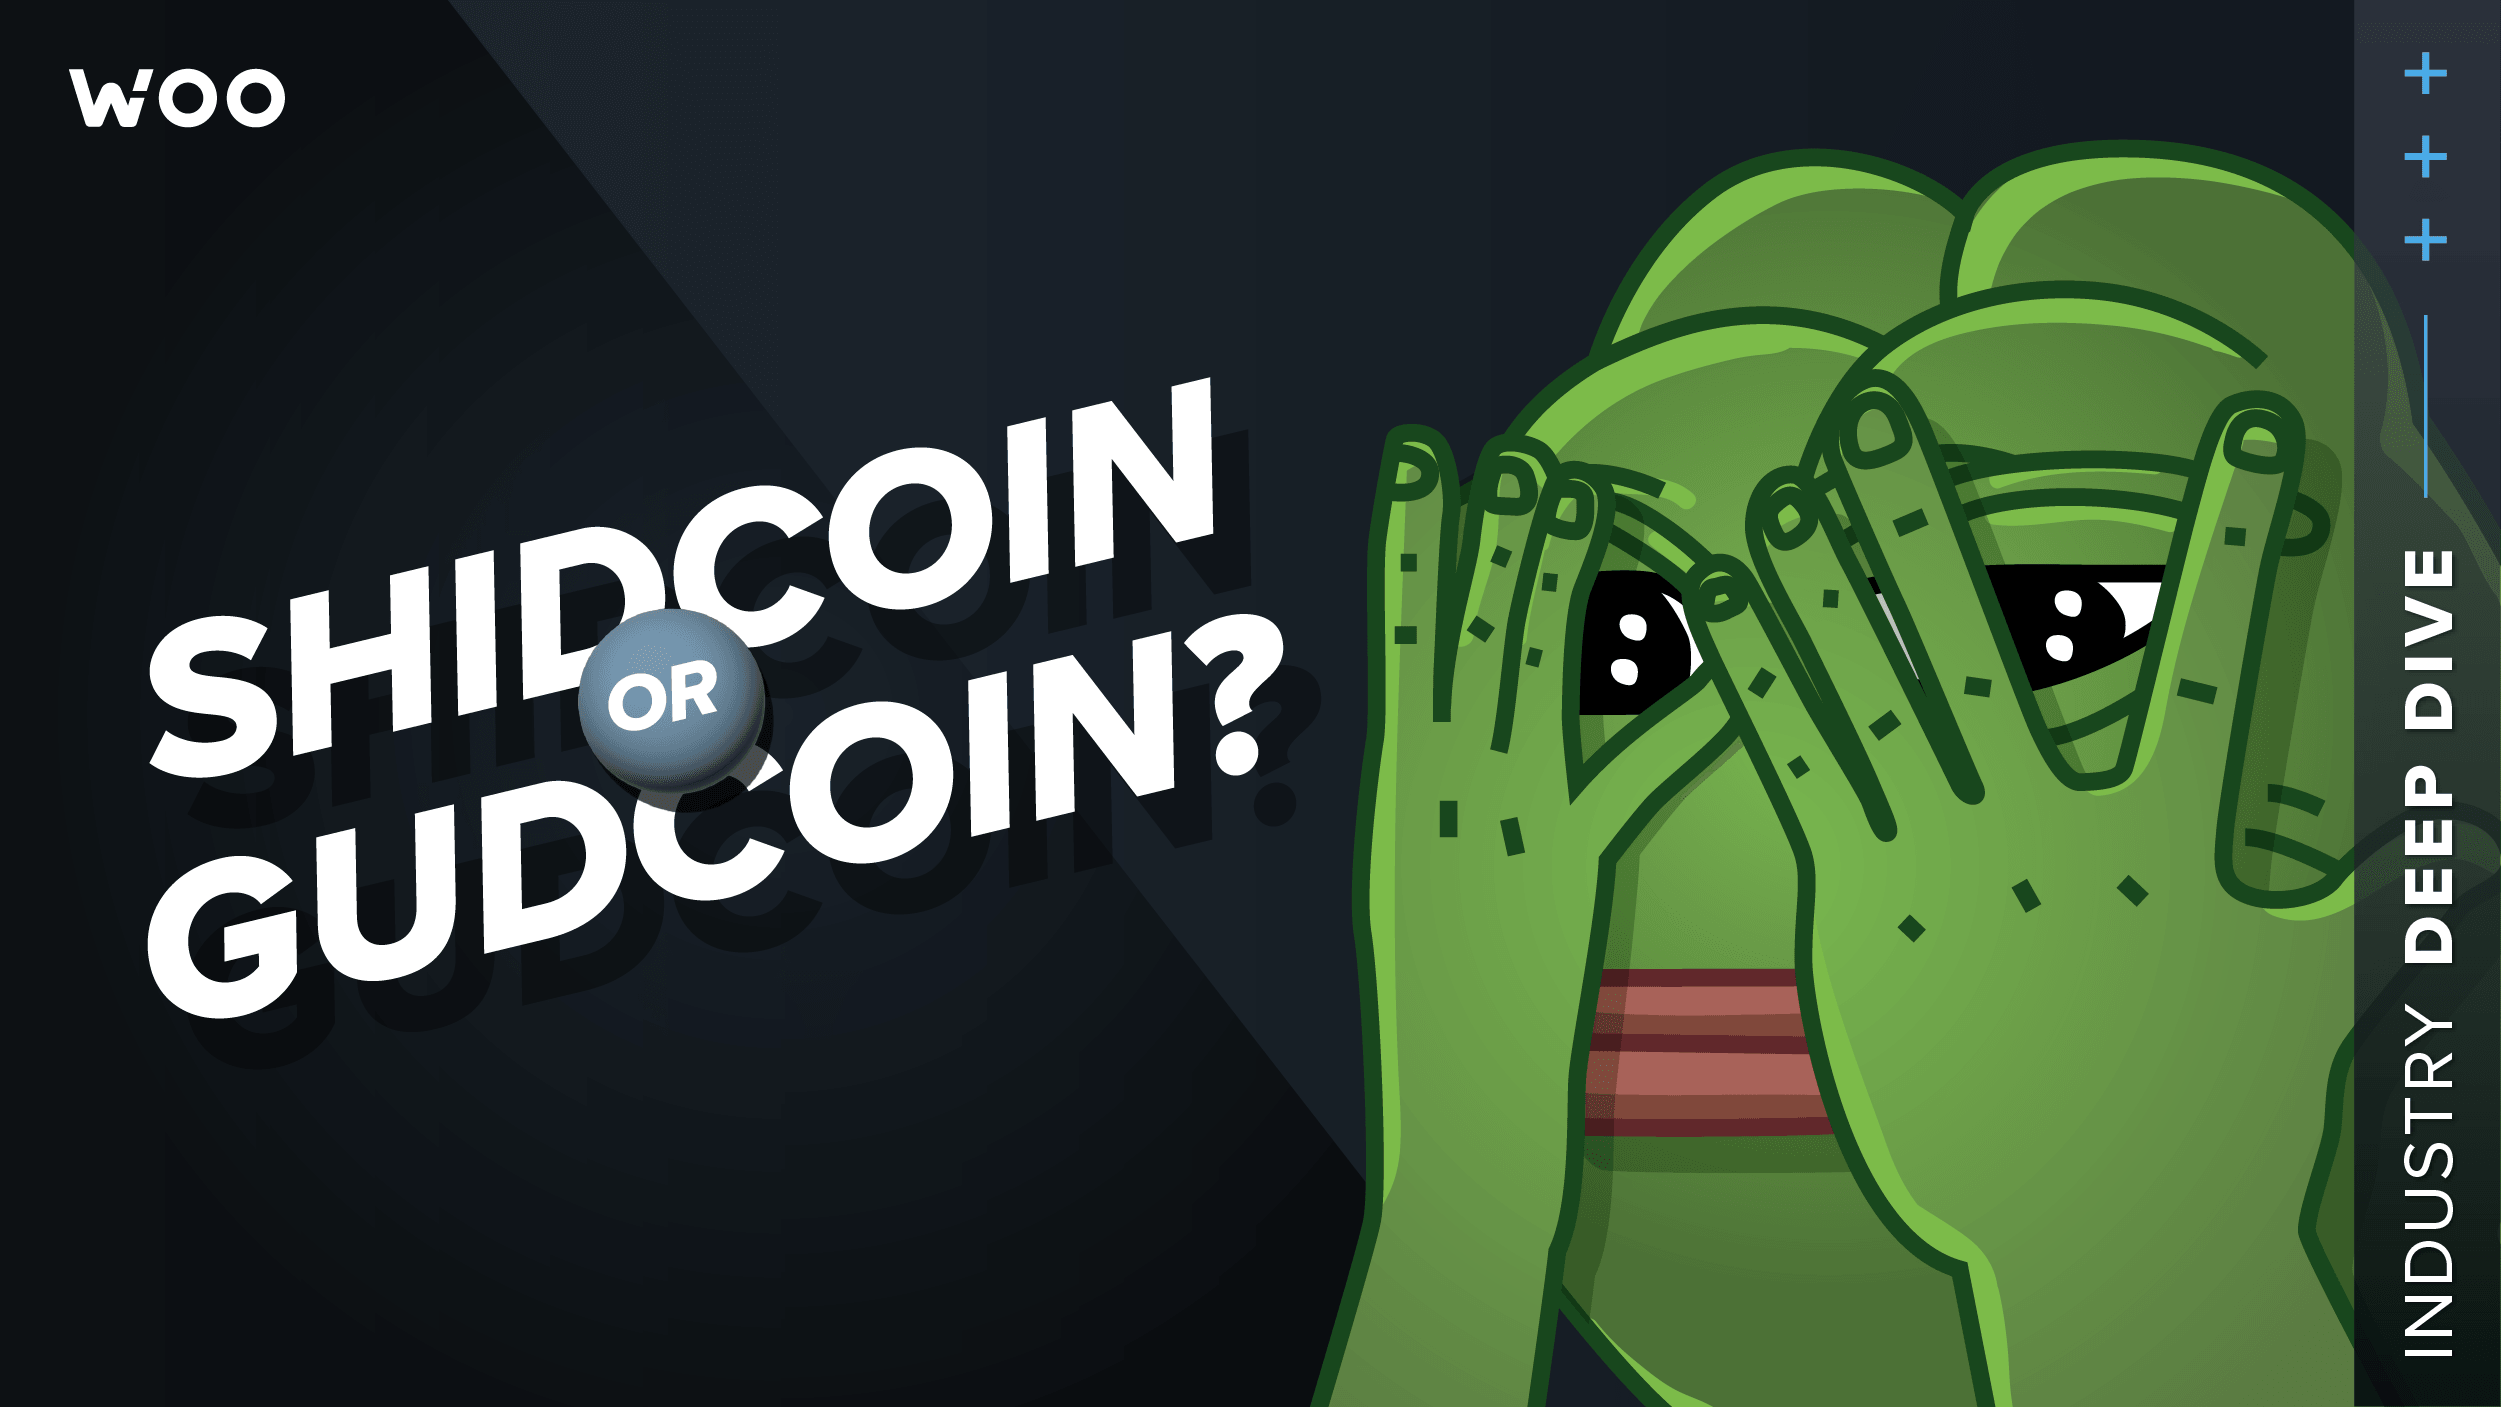 MEVFree: Shidcoin or gudcoin?